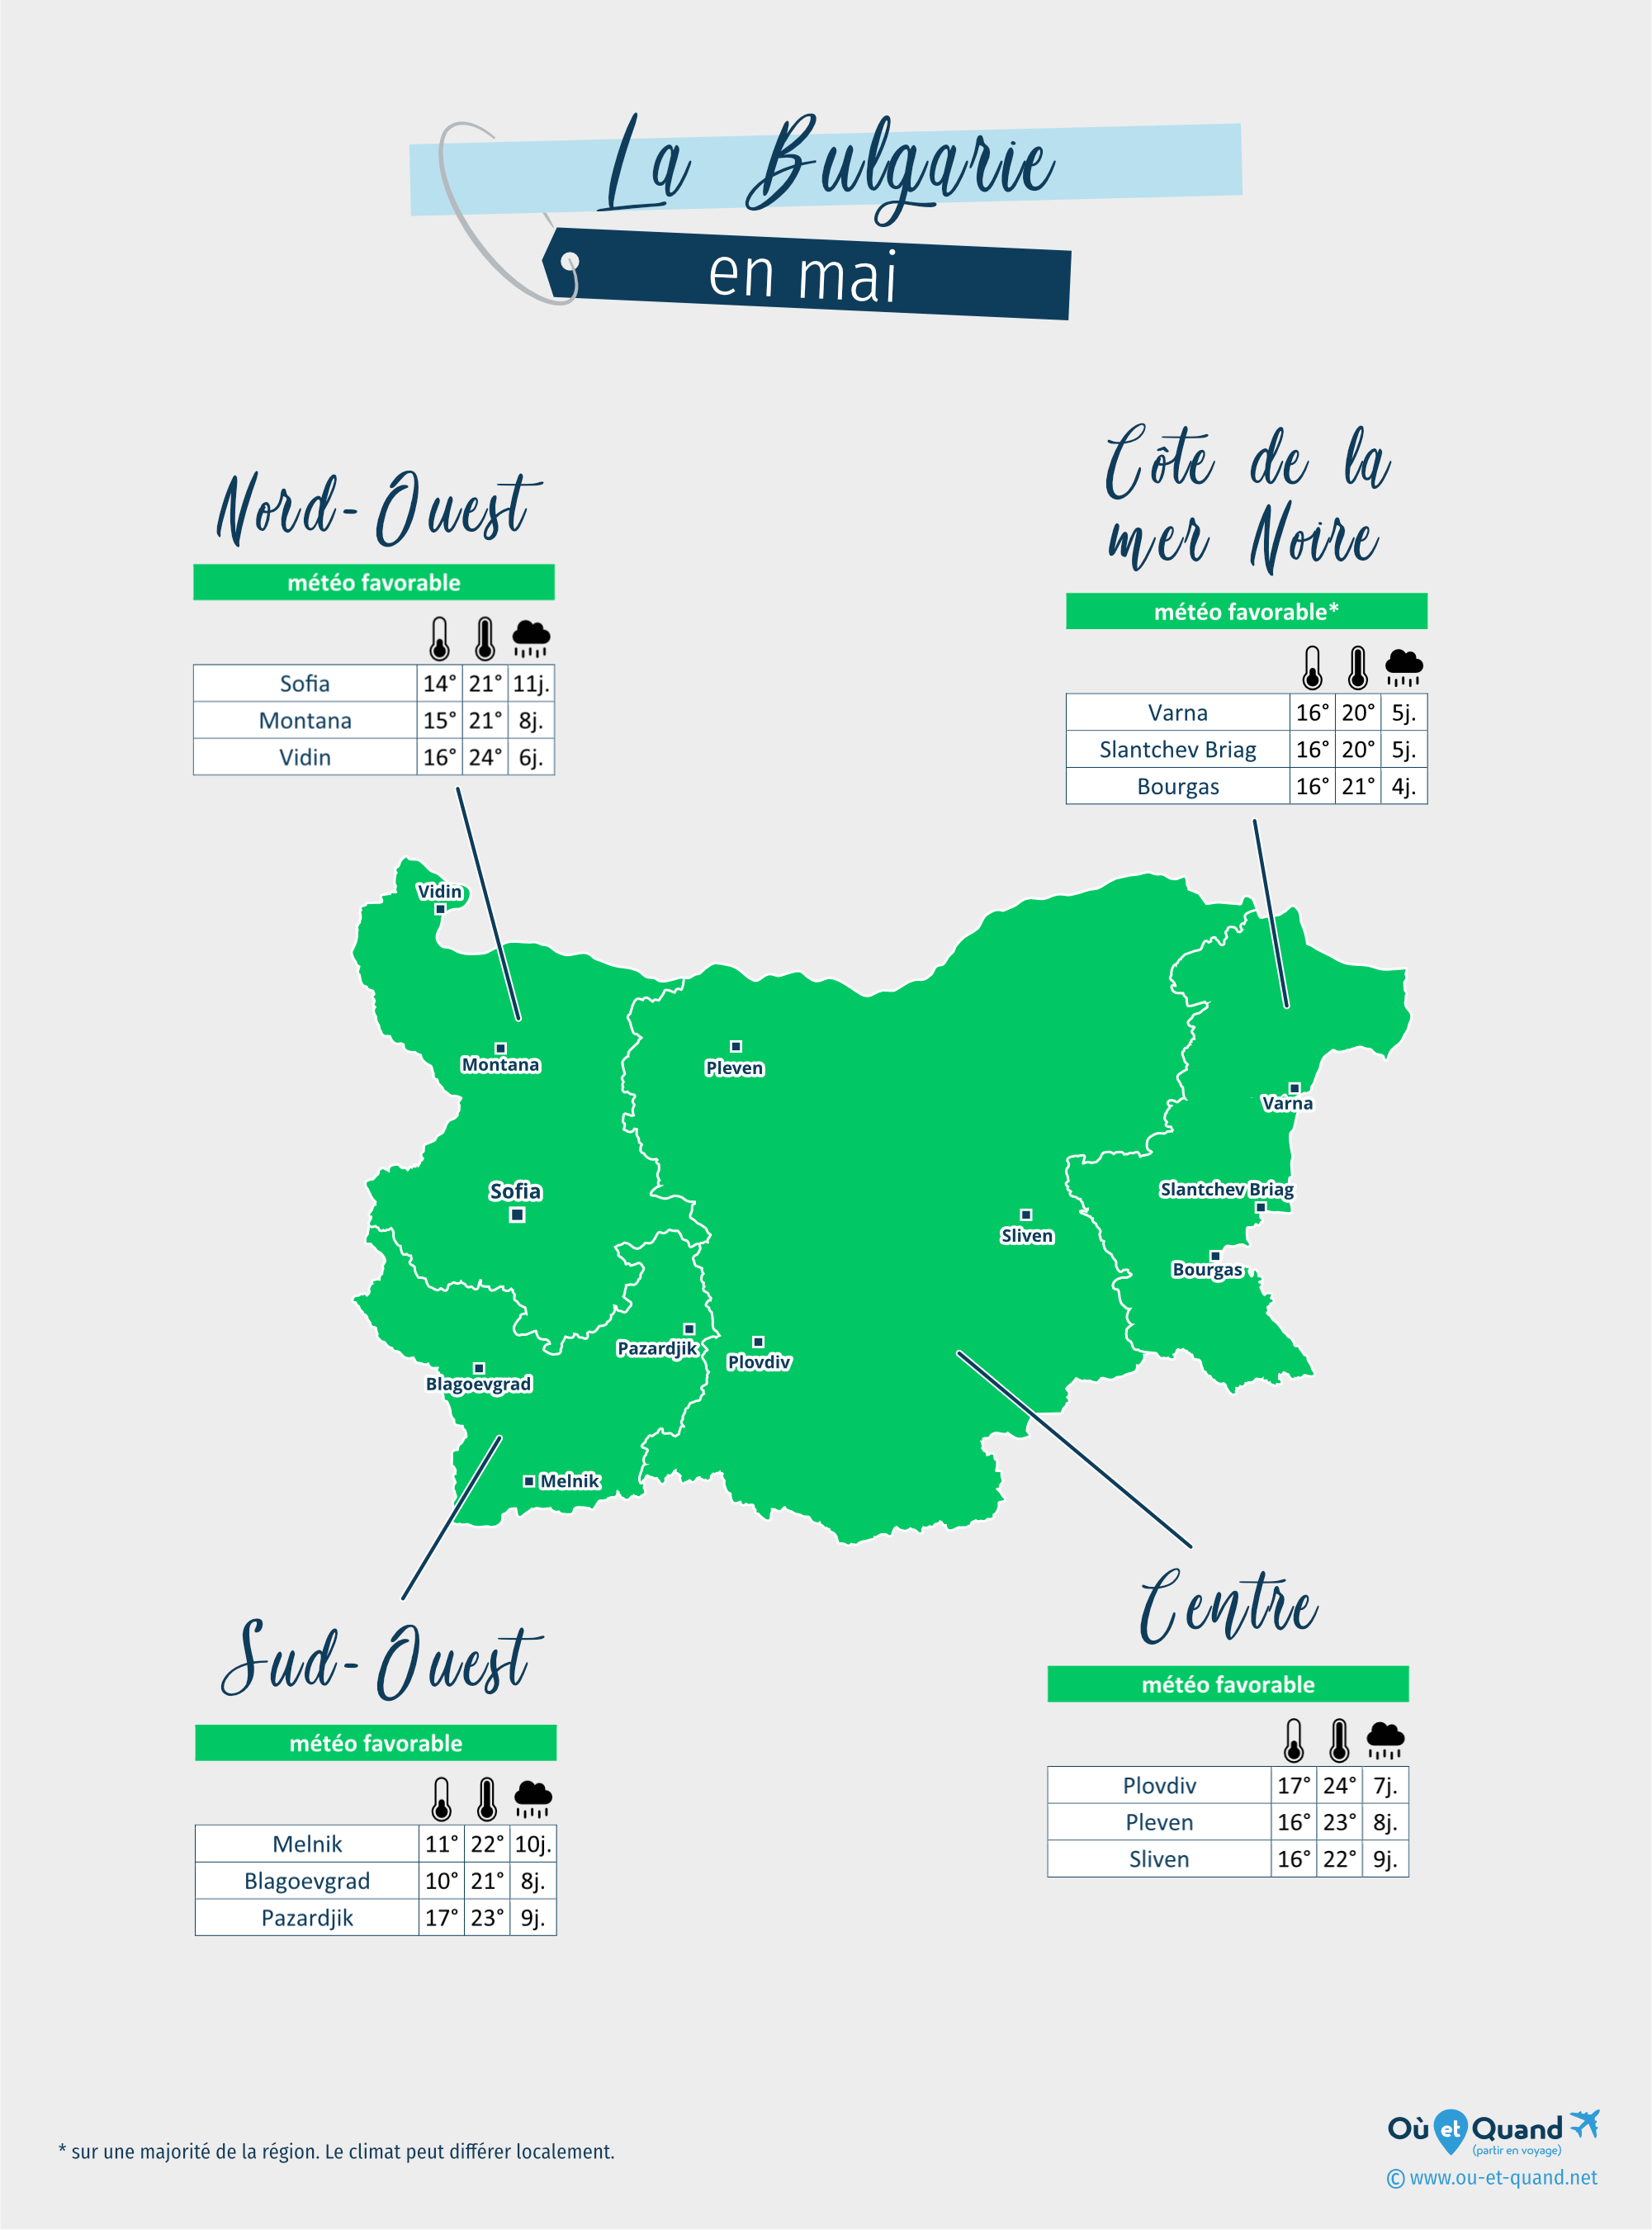 Carte de la météo en mai dans les régions de la Bulgarie